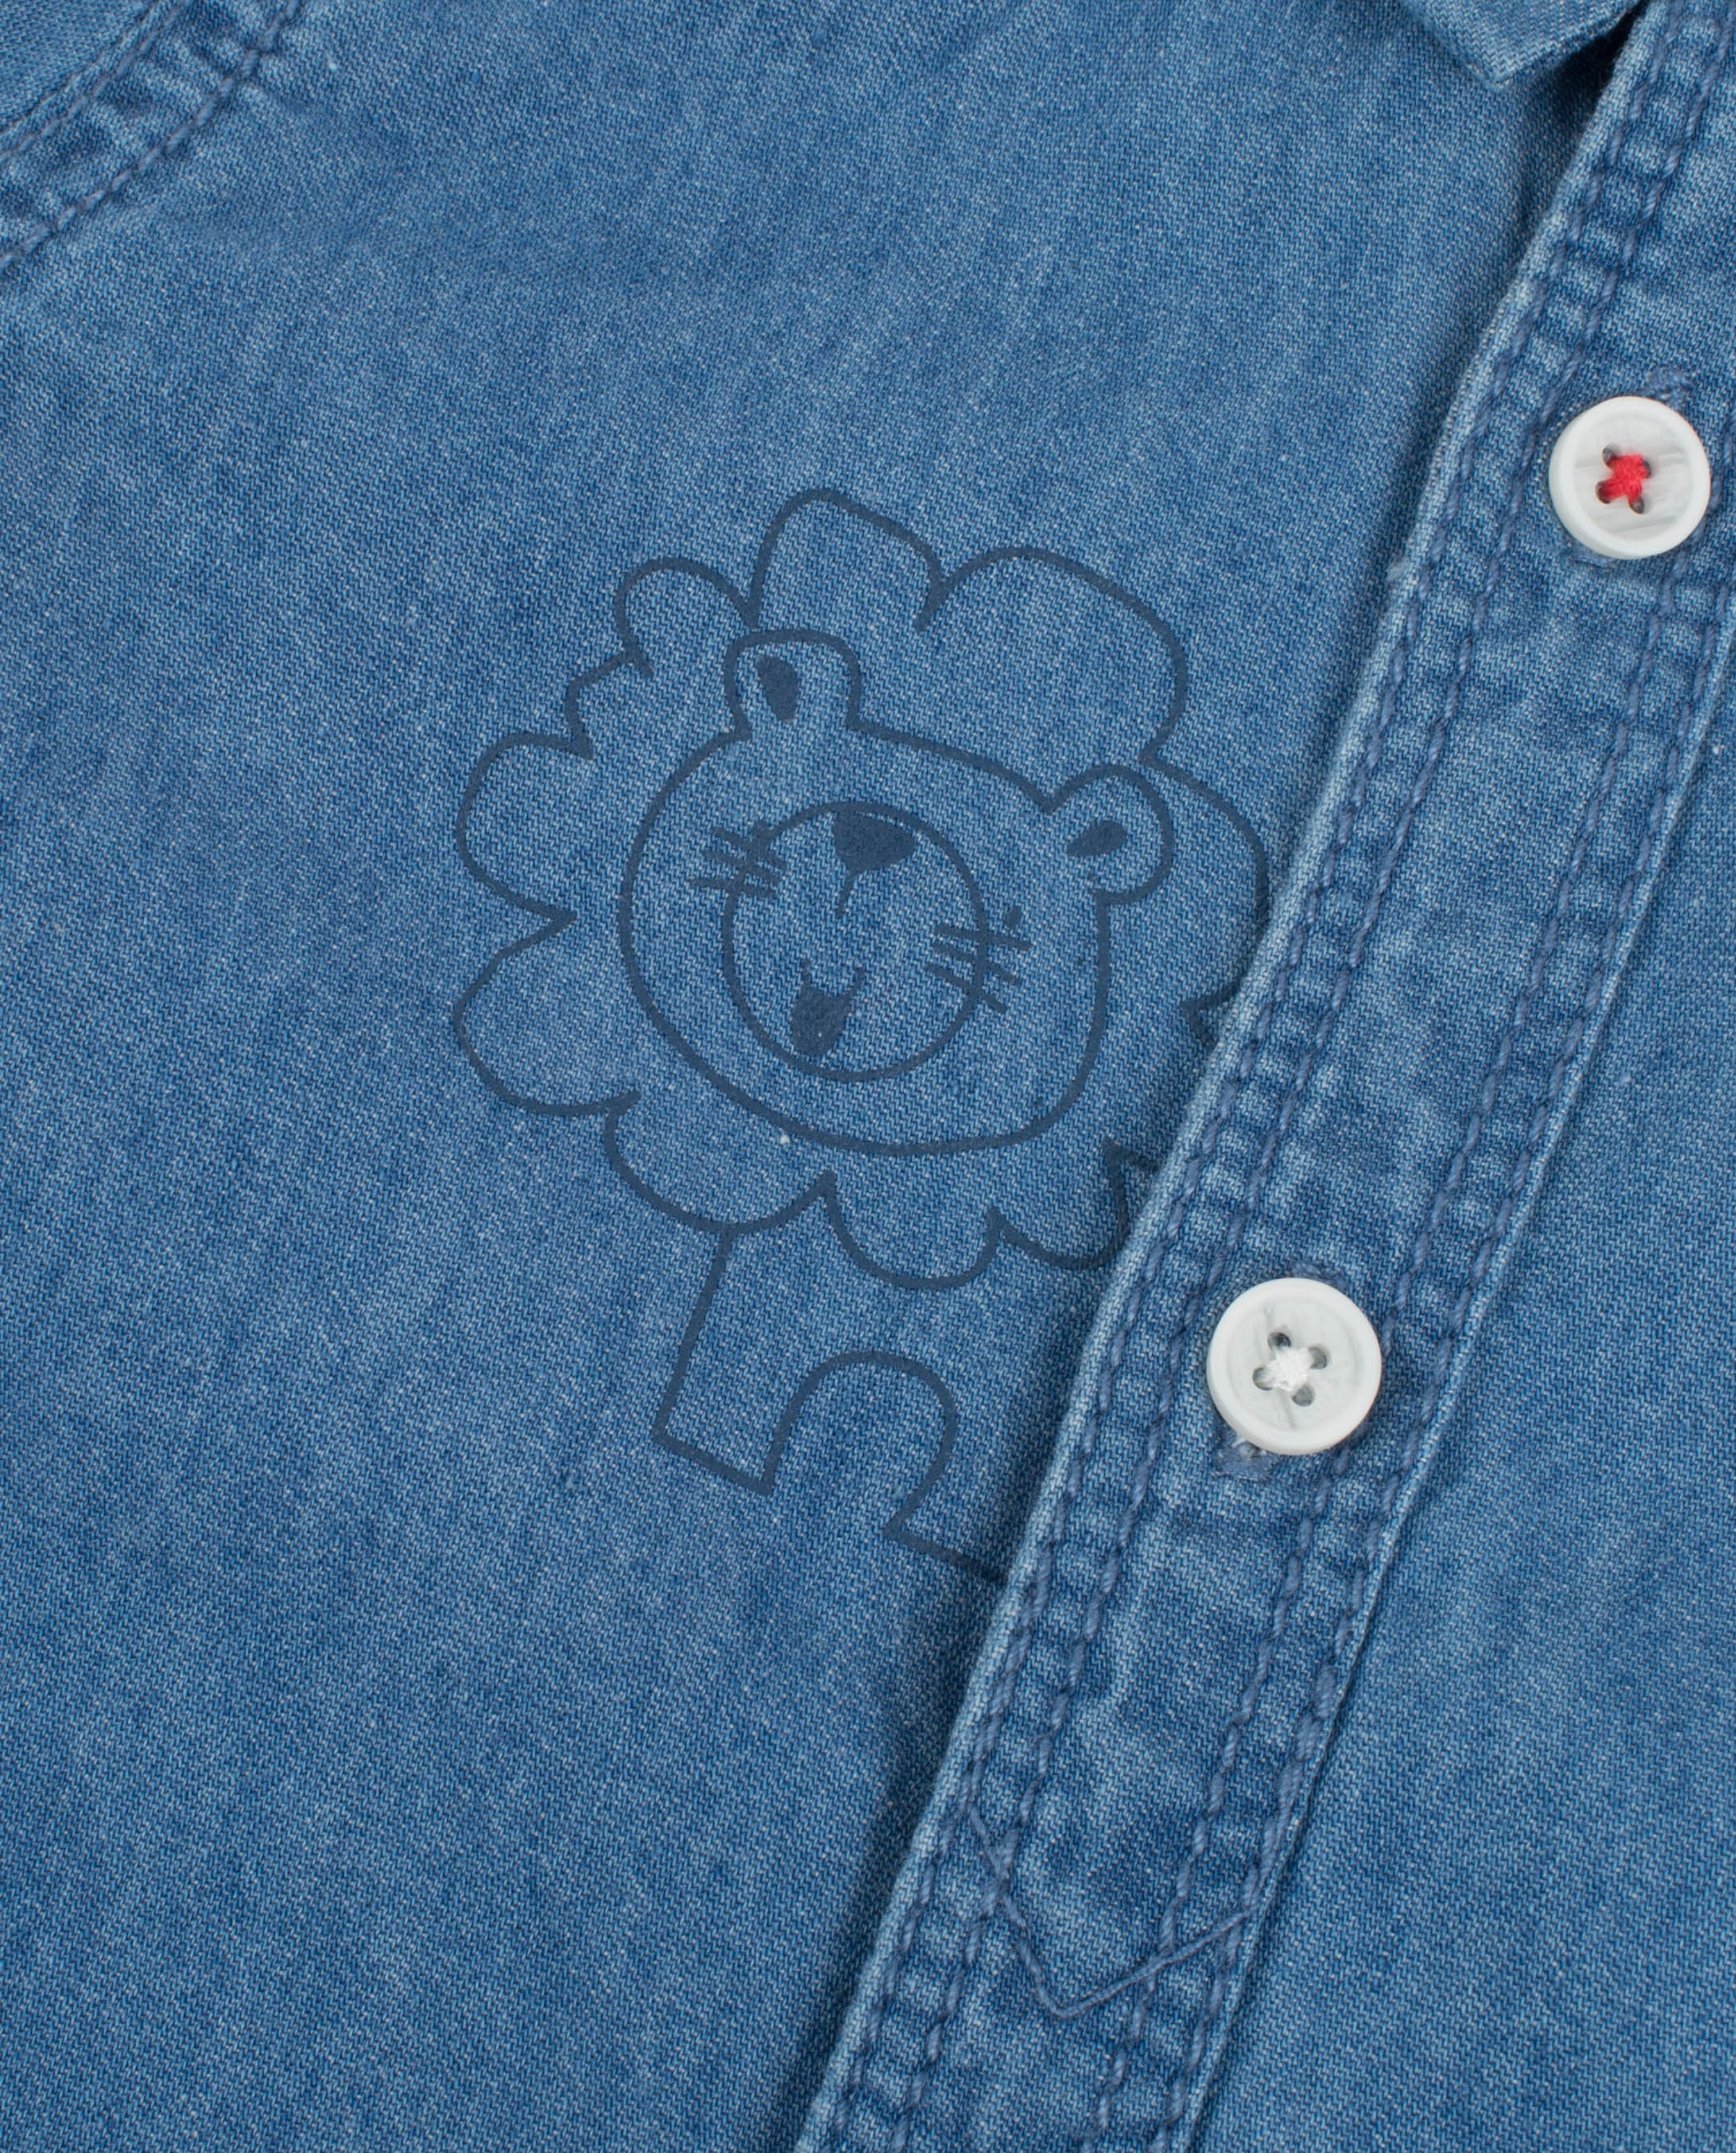 Hemden - Jeanshemd met print van een leeuw